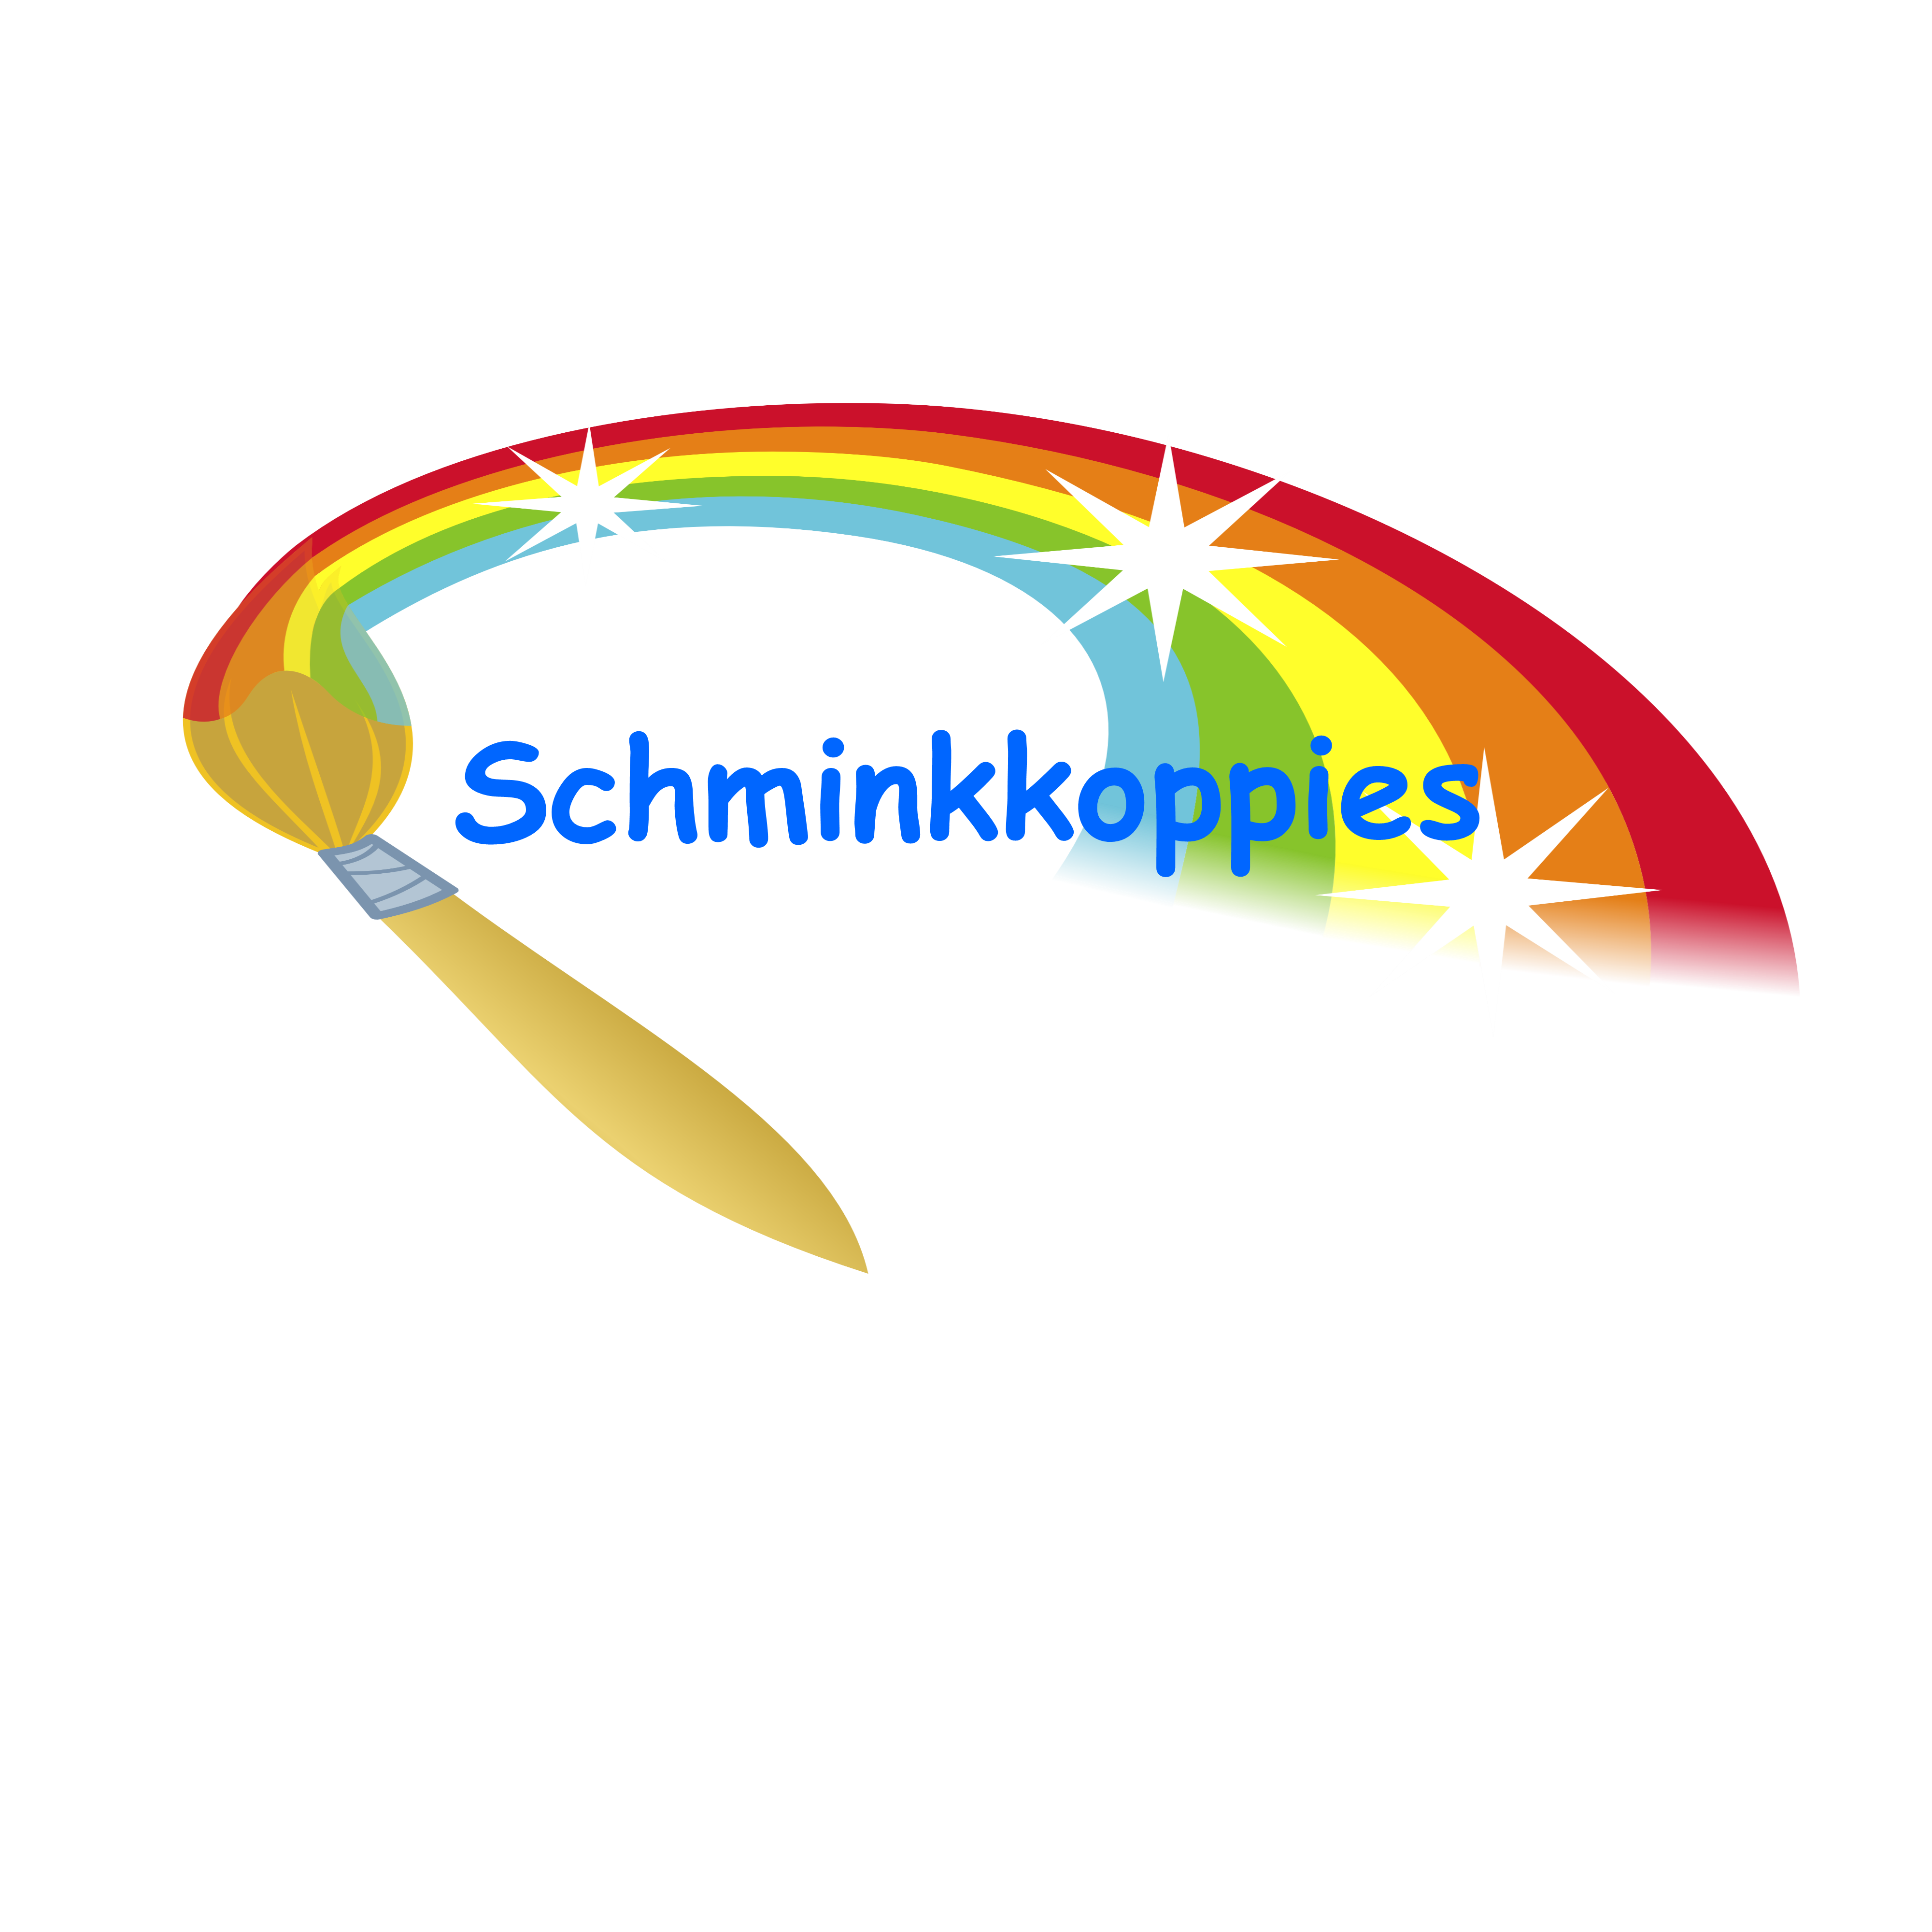 Verwonderlijk Leren Schminken Stap voor Stap door Schminkkoppies - Schminkkoppies PE-84